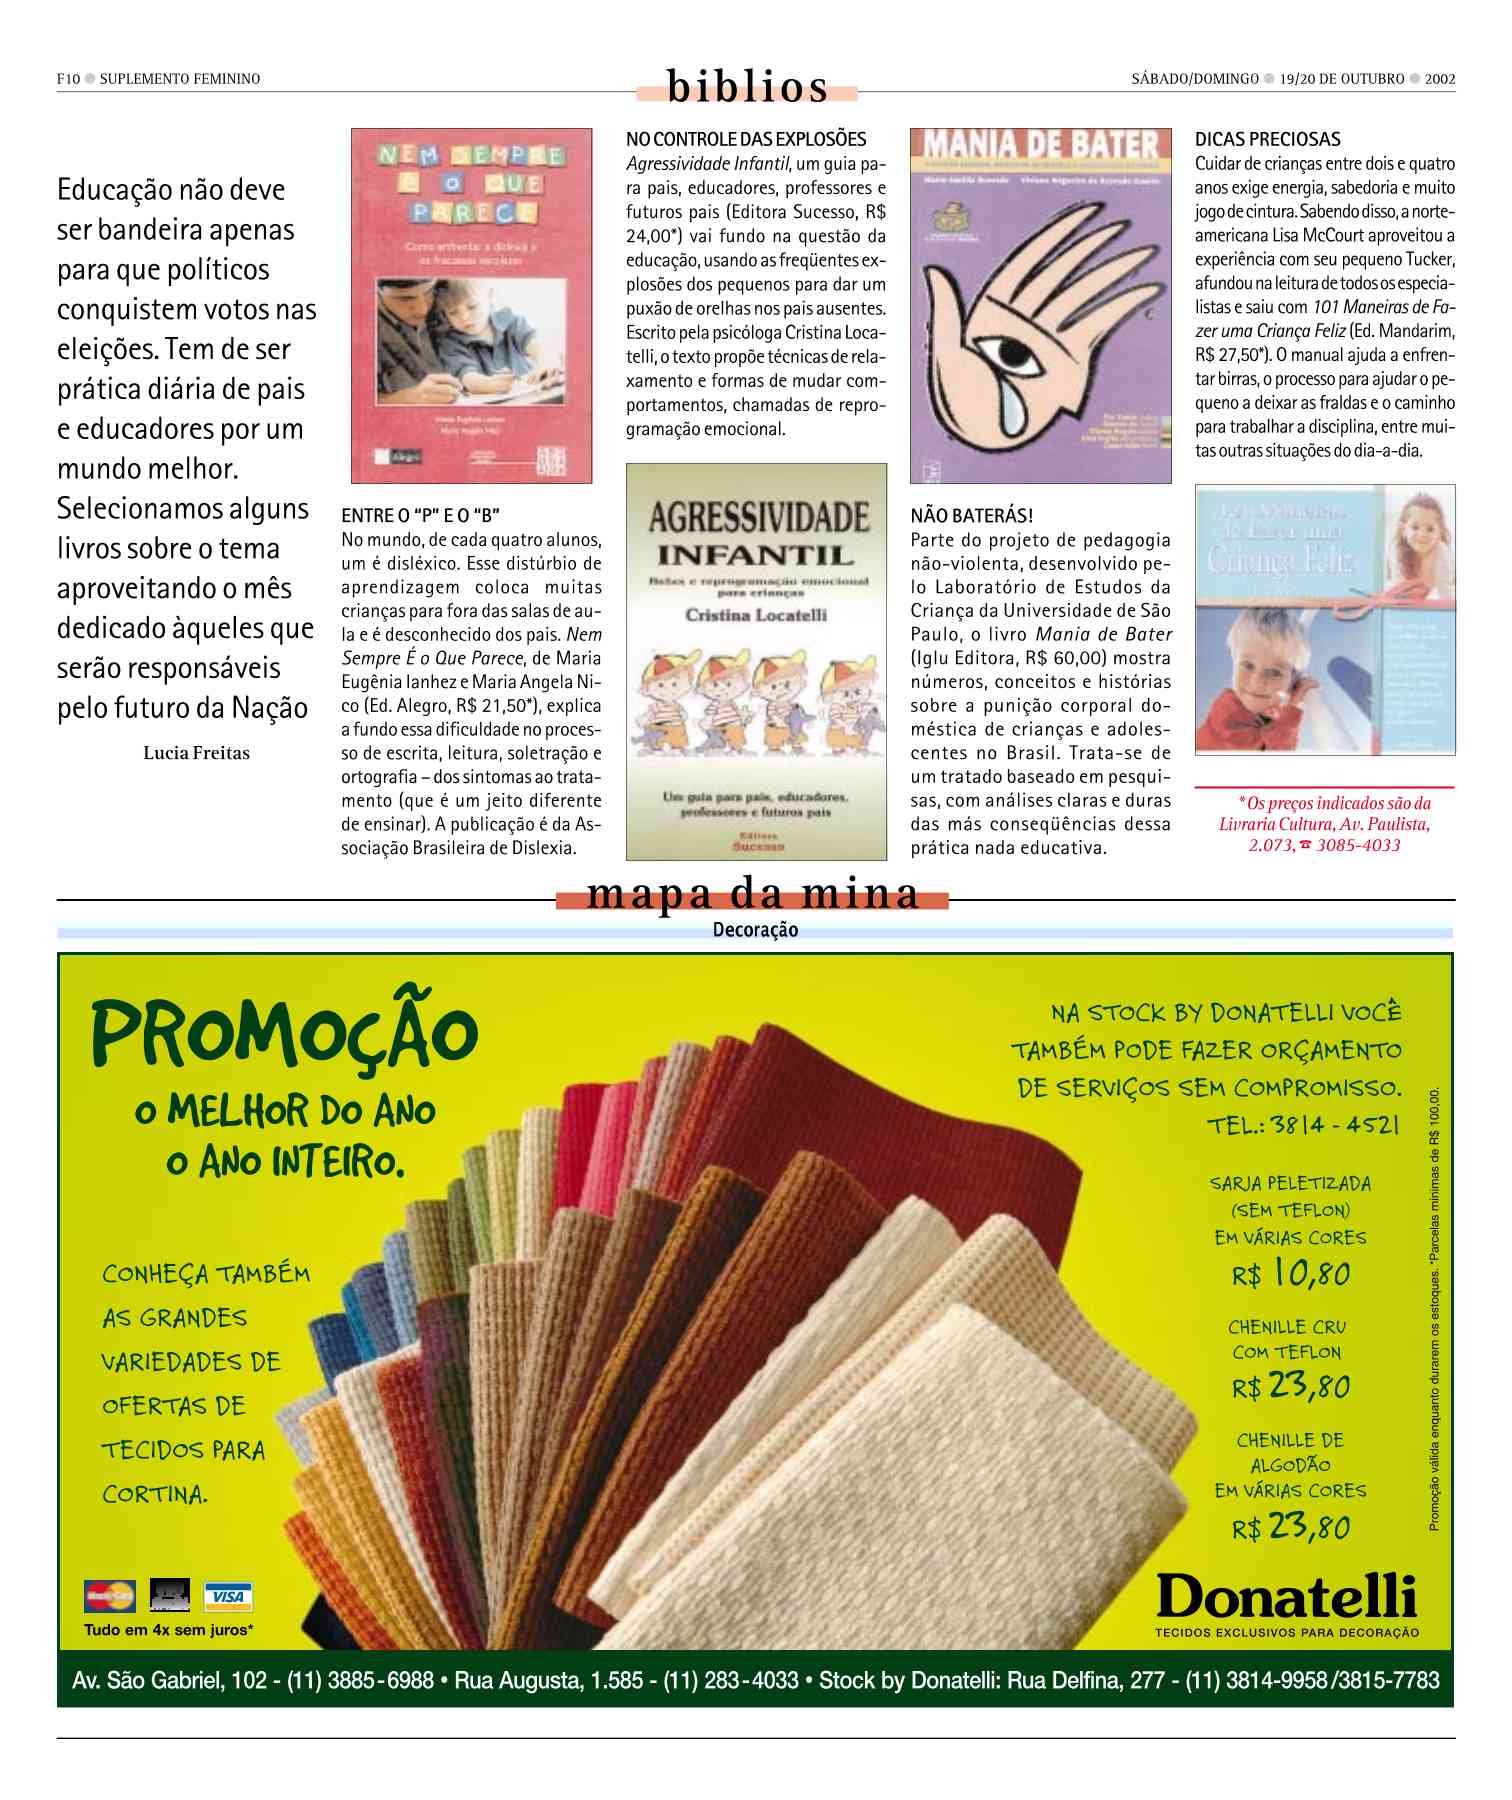 Tecto - Catálogo: Donatelli - Donatelli - Busca: tecidos